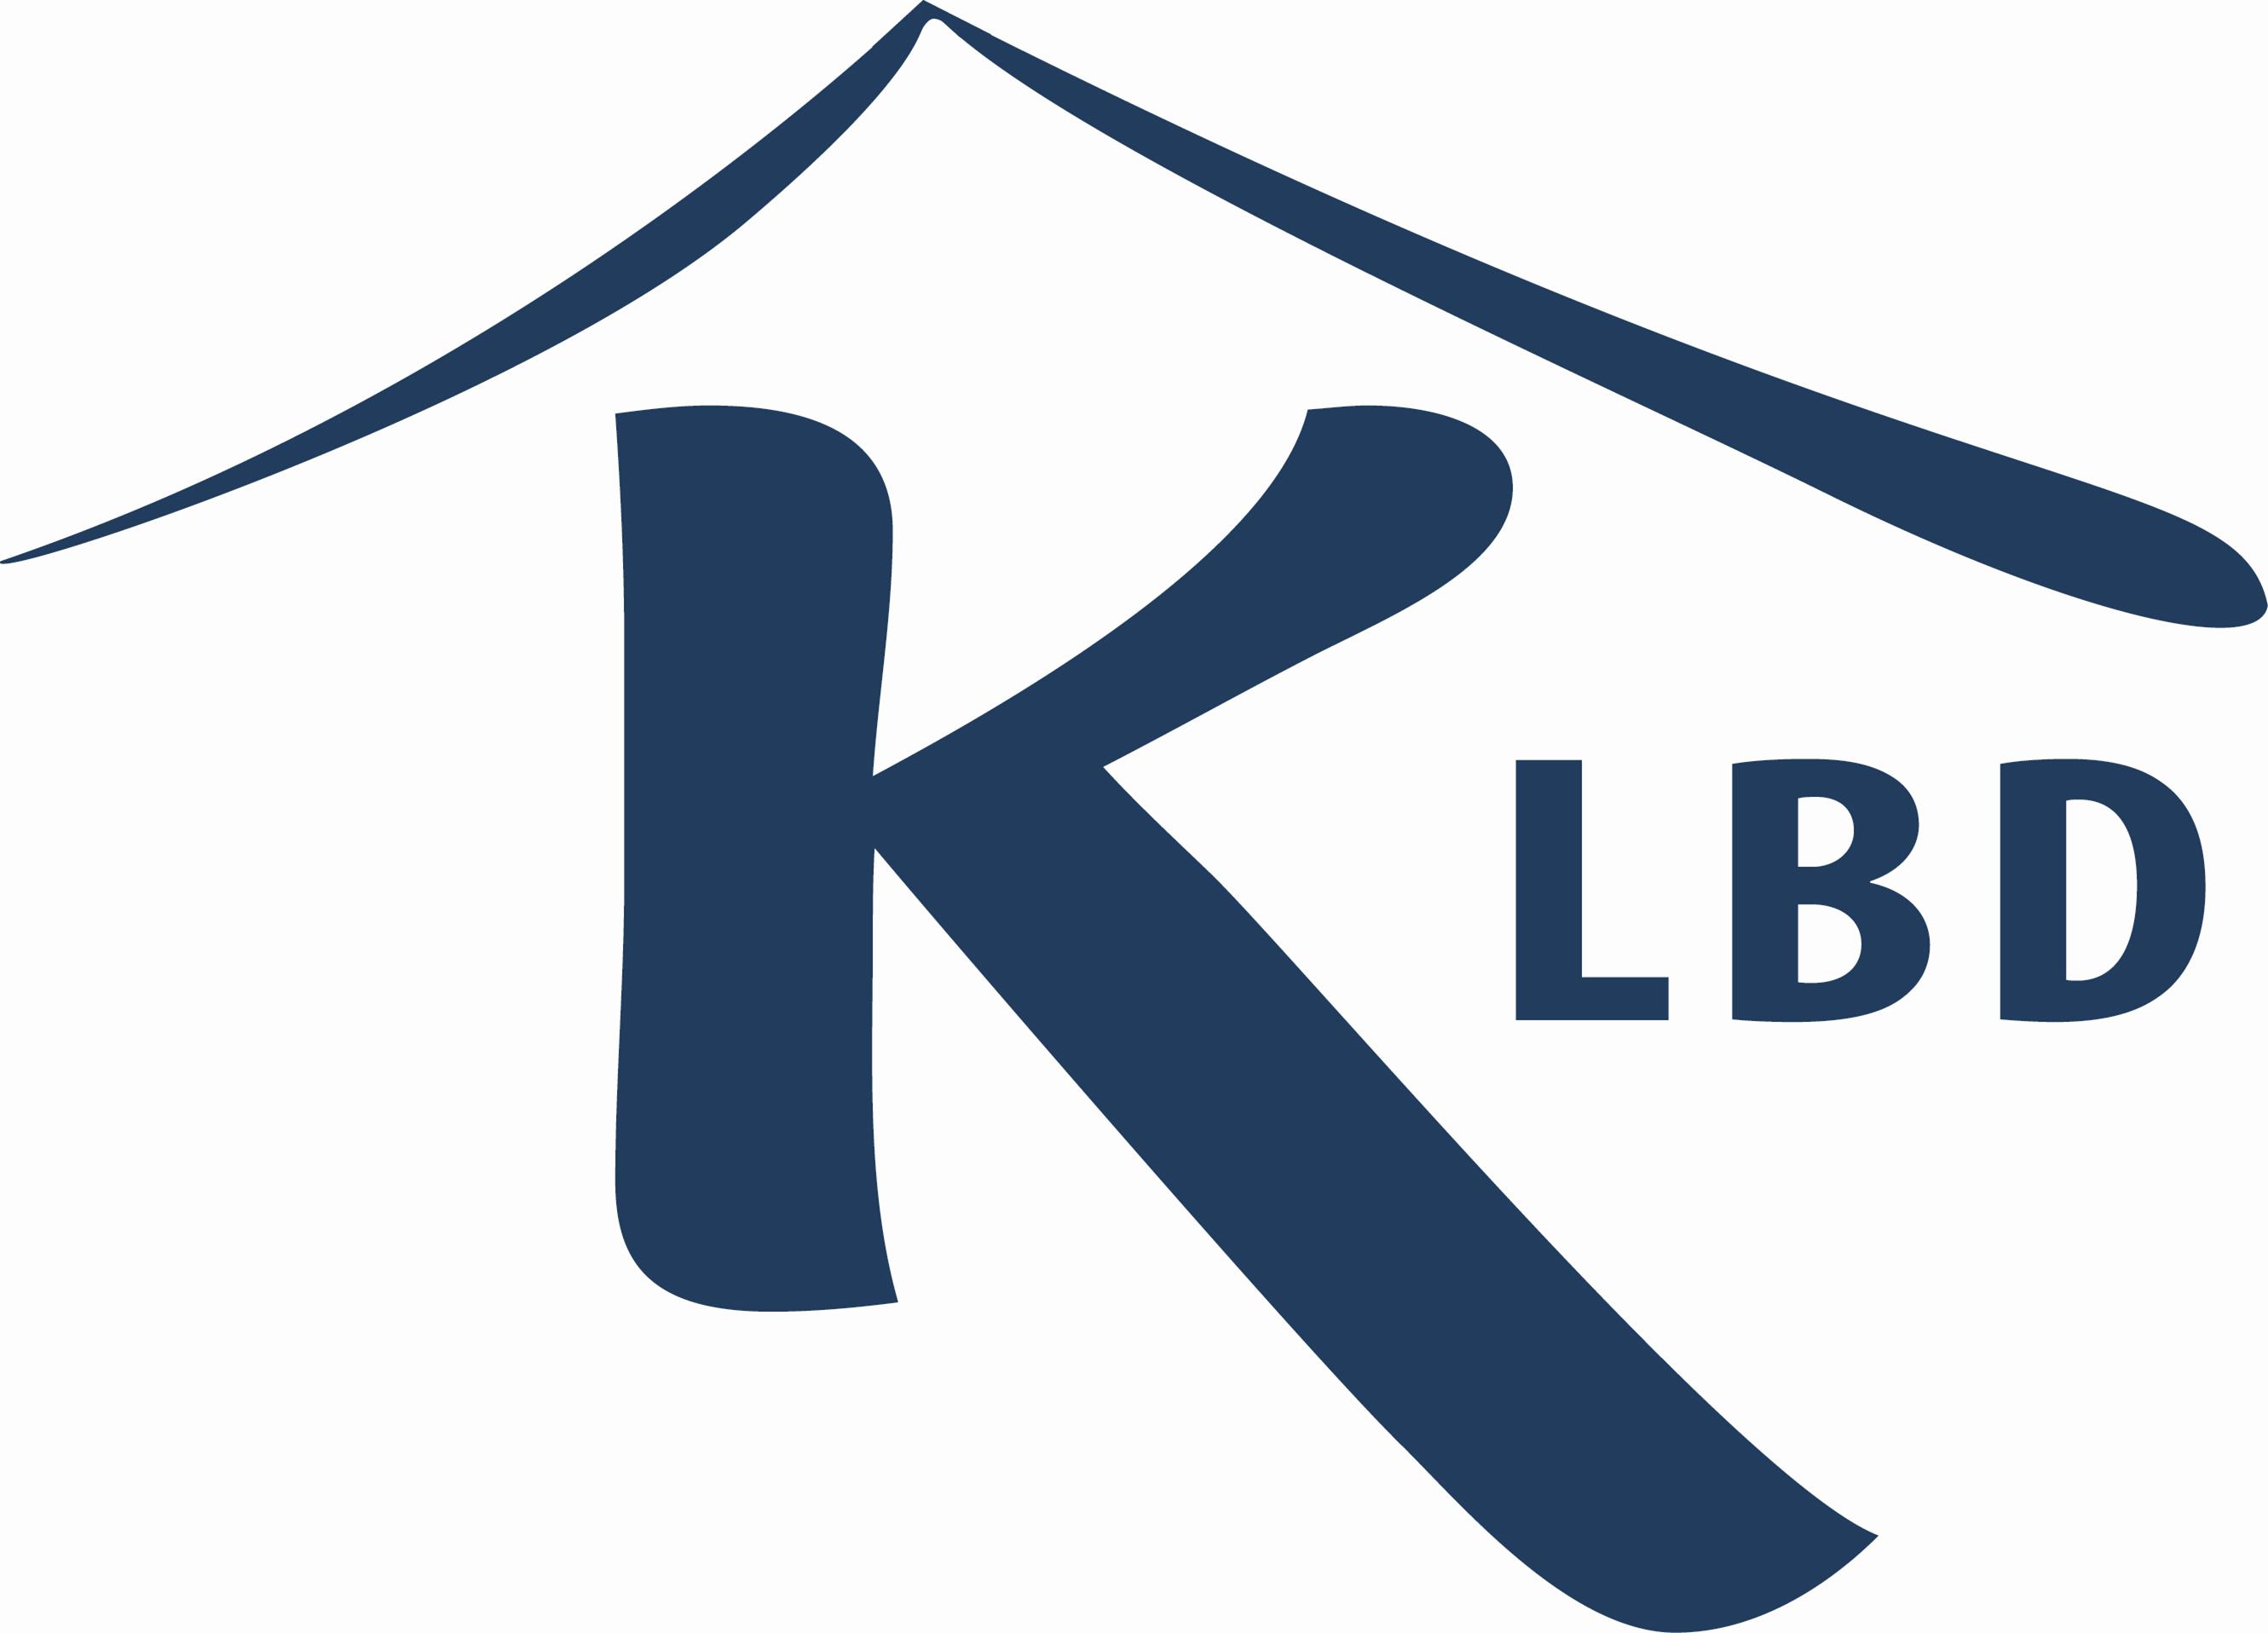 KLBD Kosher Certification